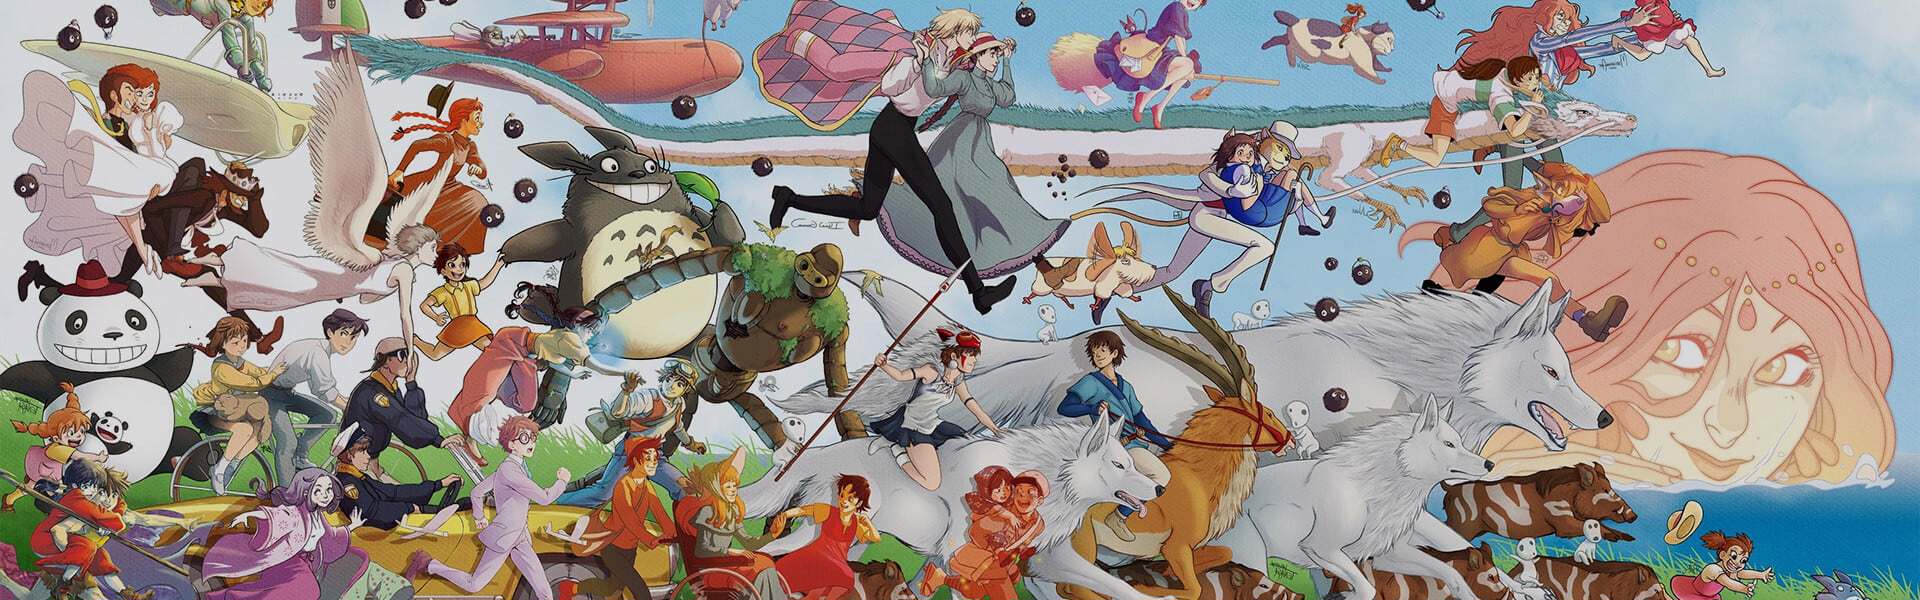 Những phim của Studio Ghibli hay nhất có mặt trên Netflix